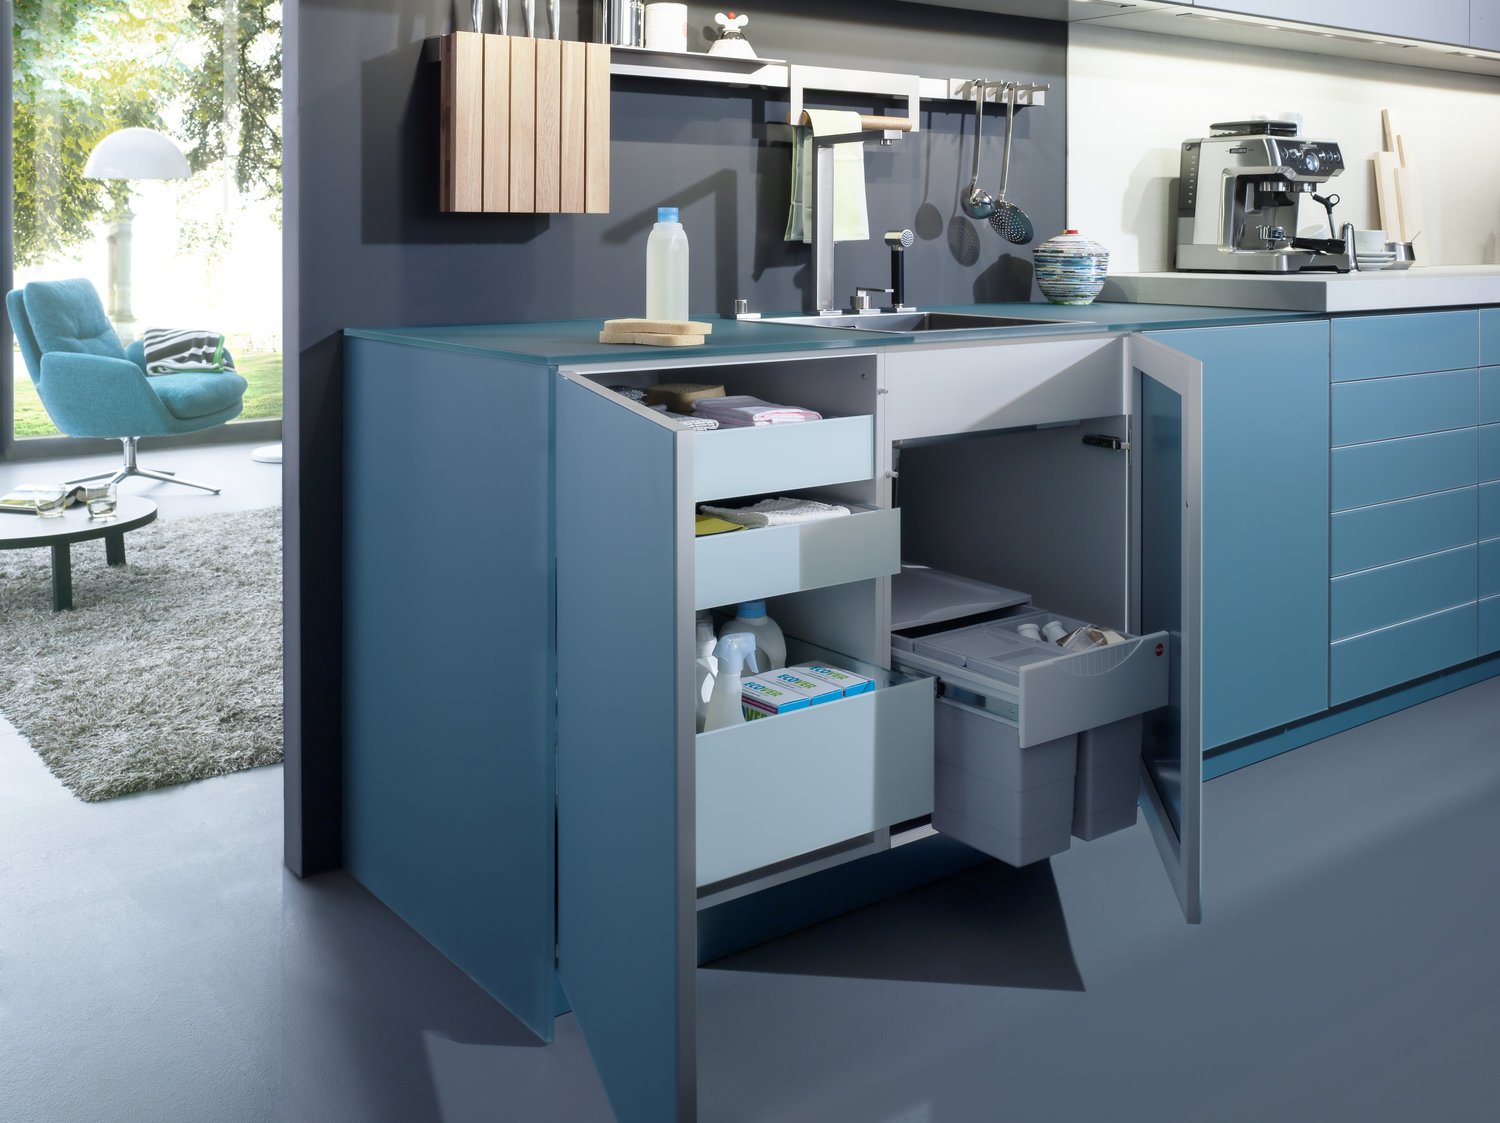 LEICHT LARGO-FG  IOS-M connaught kitchens baby blue cupboards 2.jpg